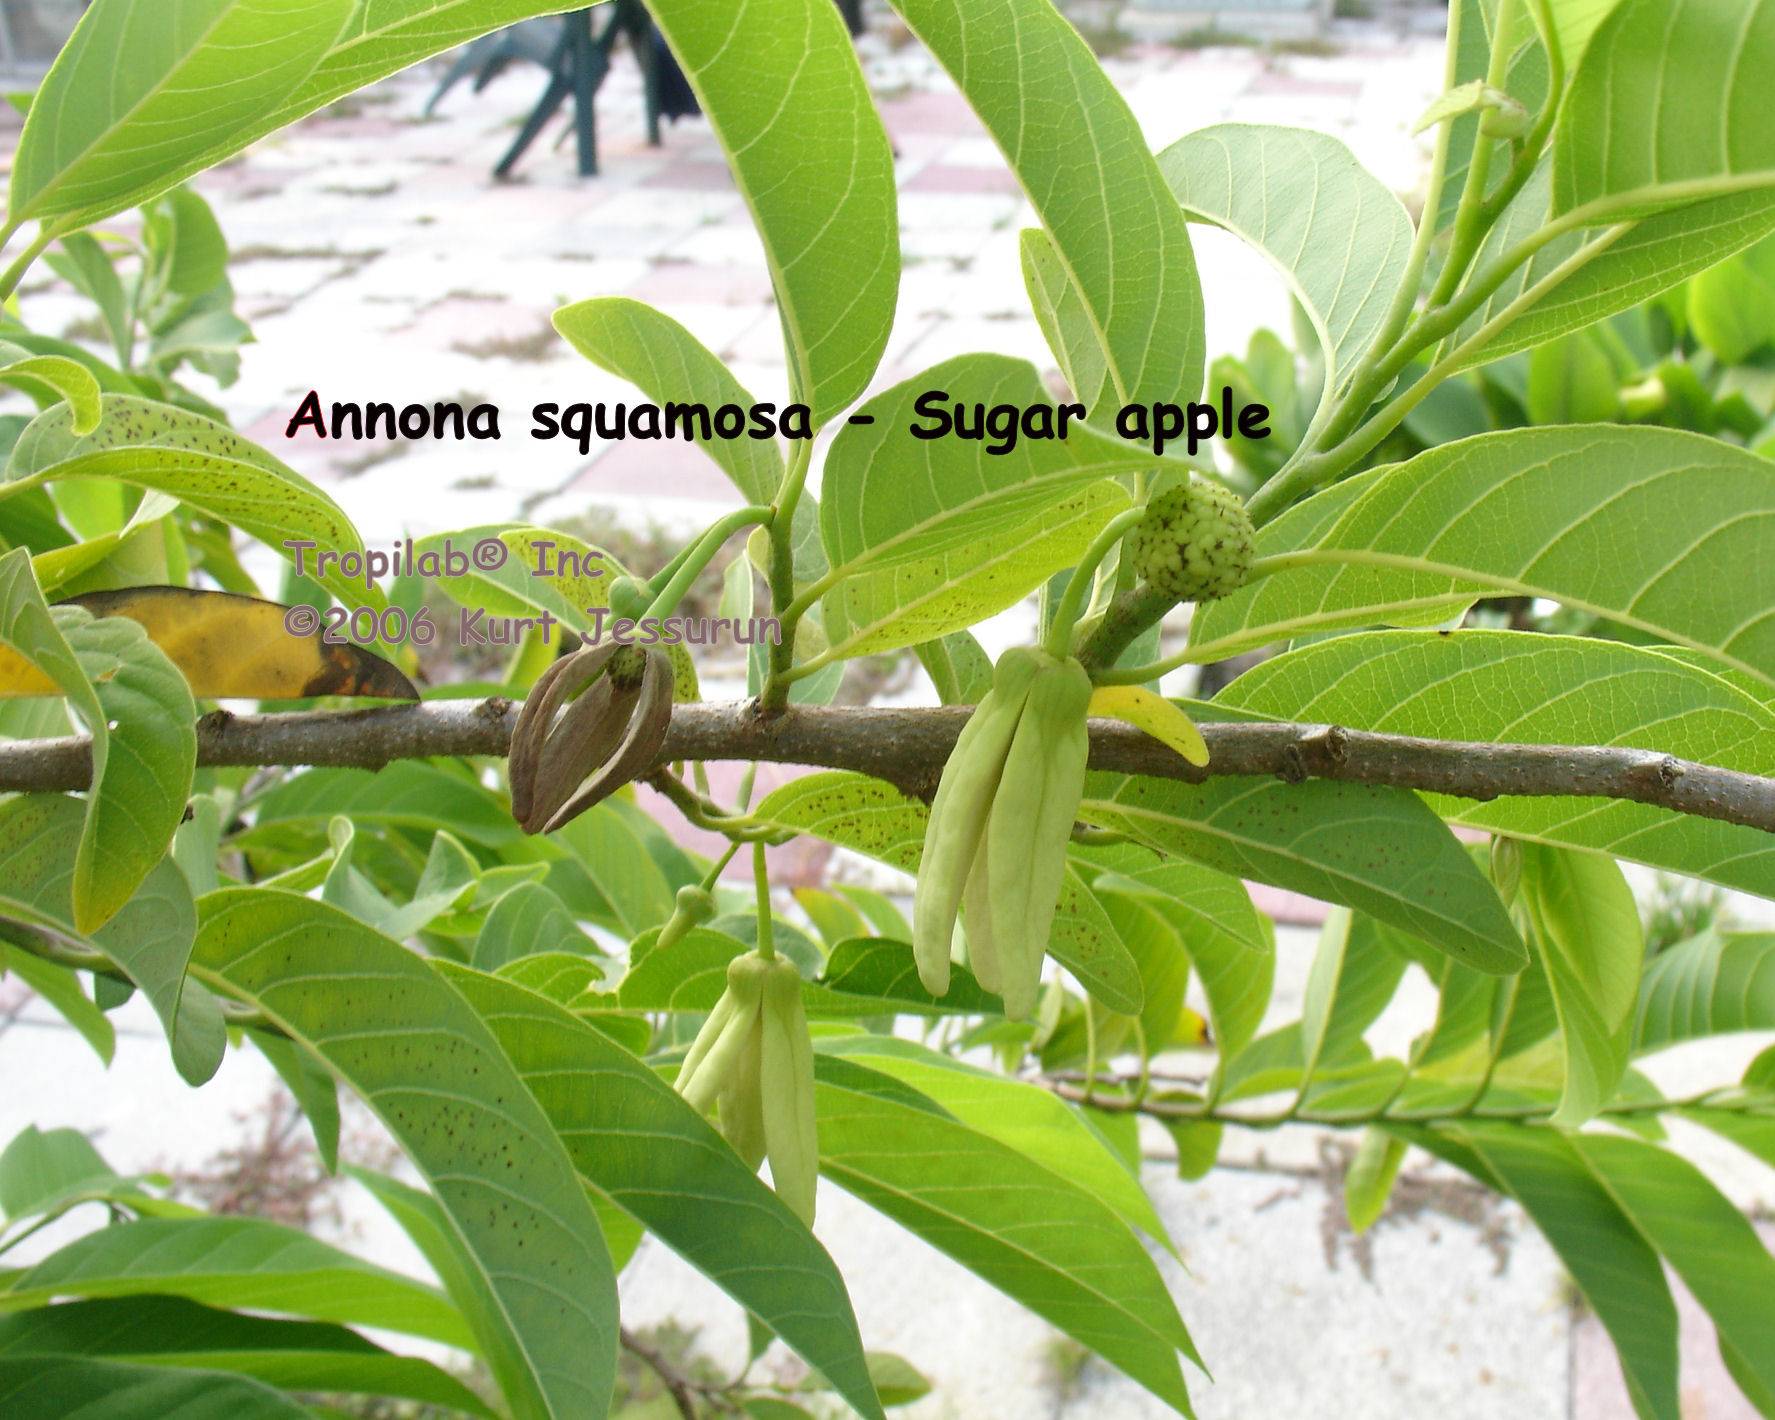 Annona squamosa - Sugar apple